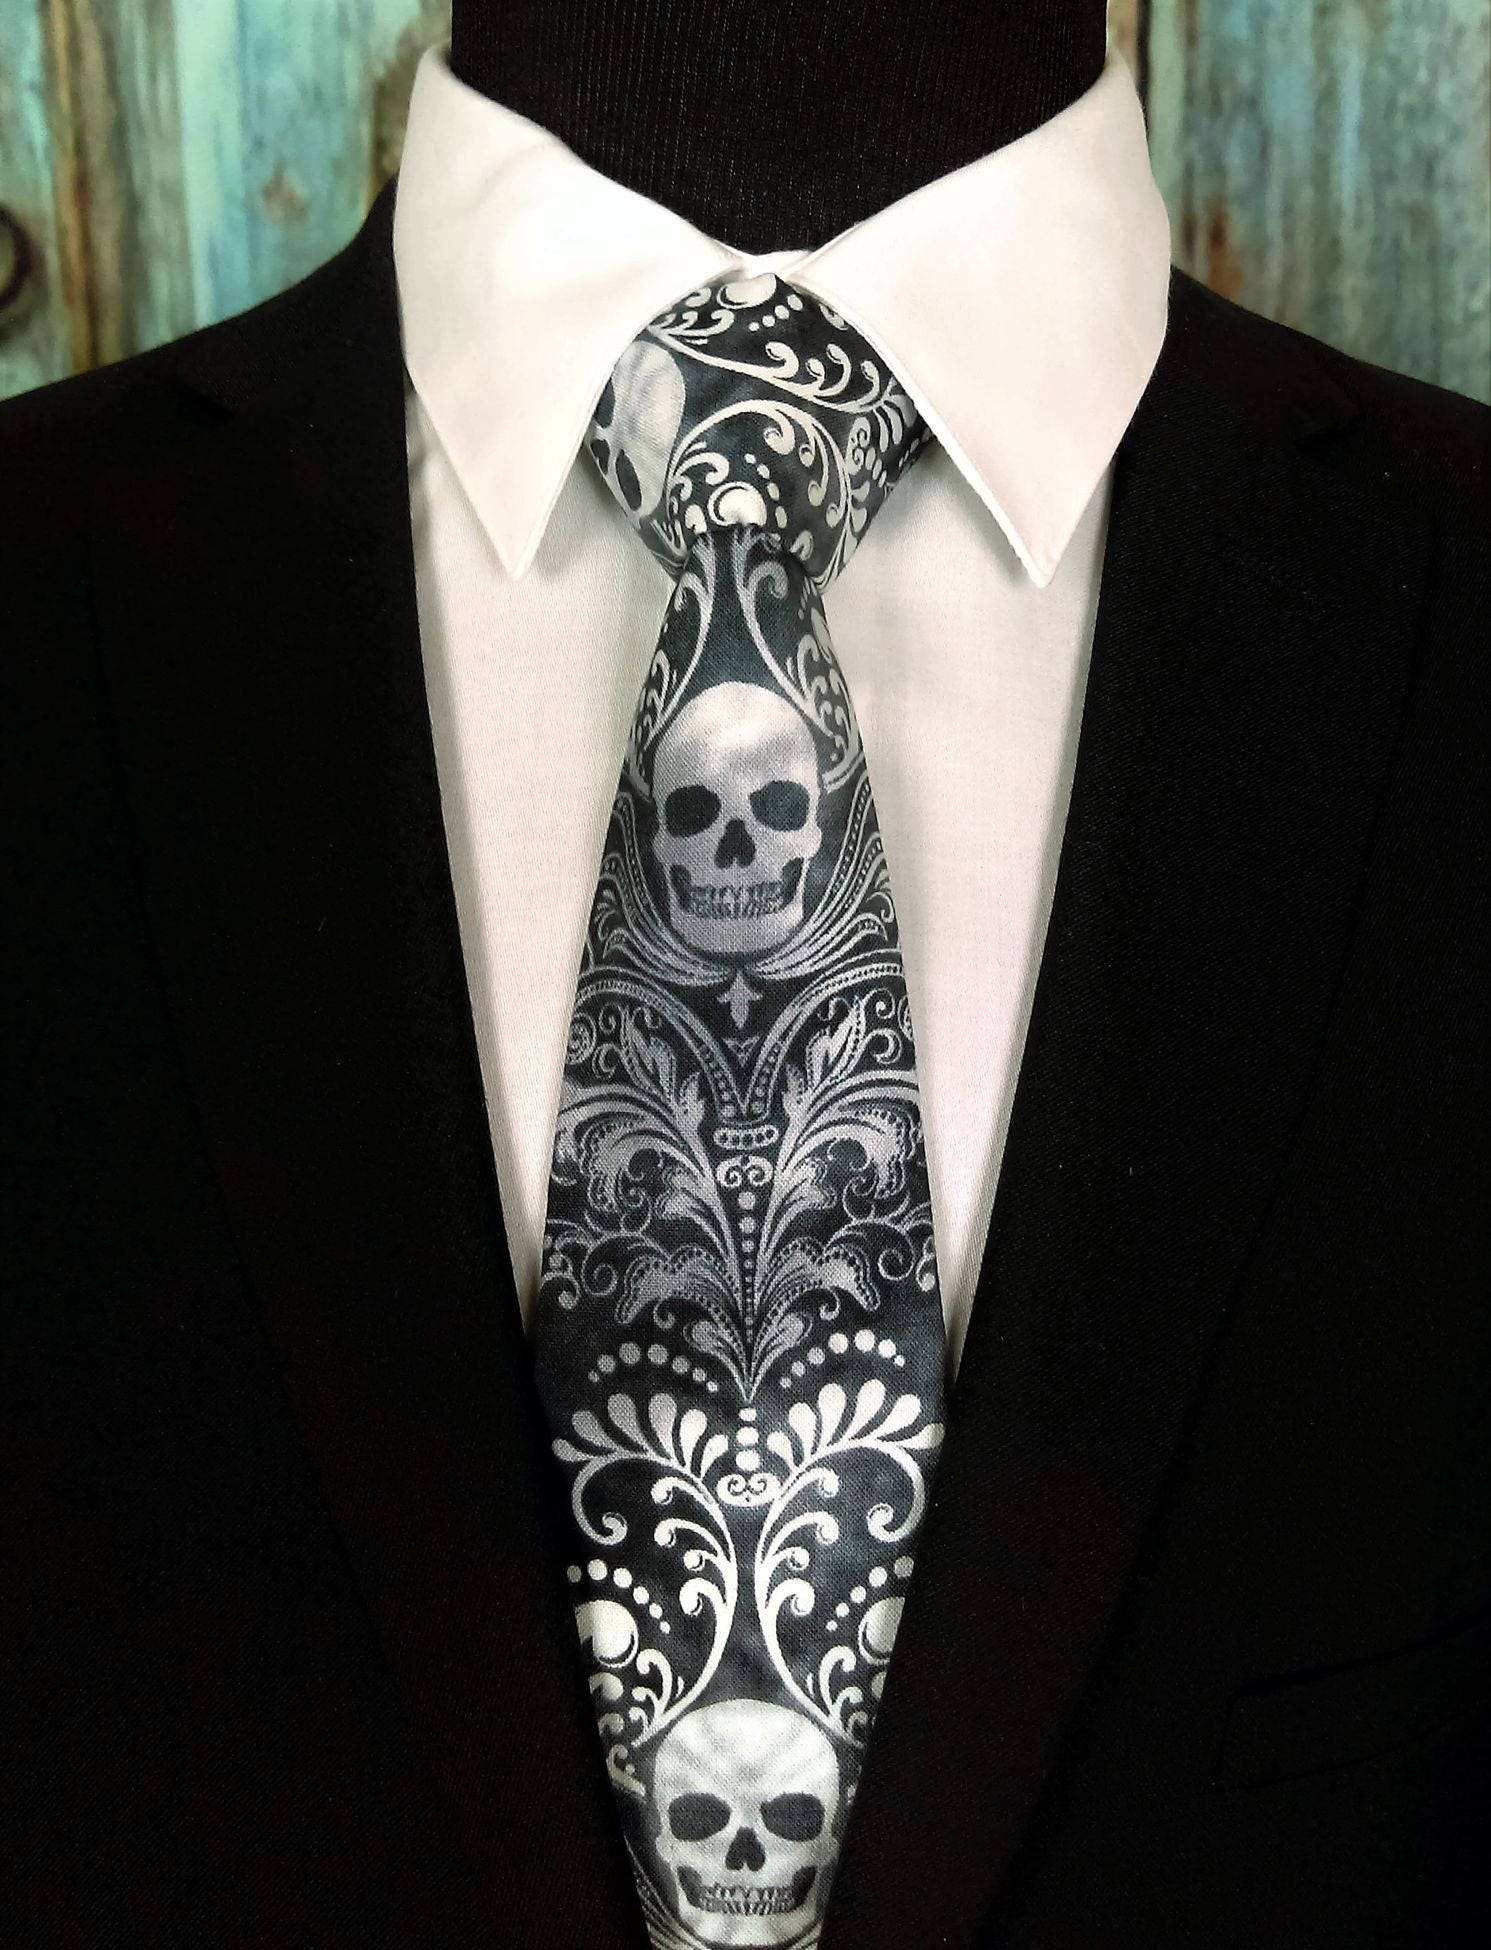 Skull Necktie – Skull Tie, Please read item description..